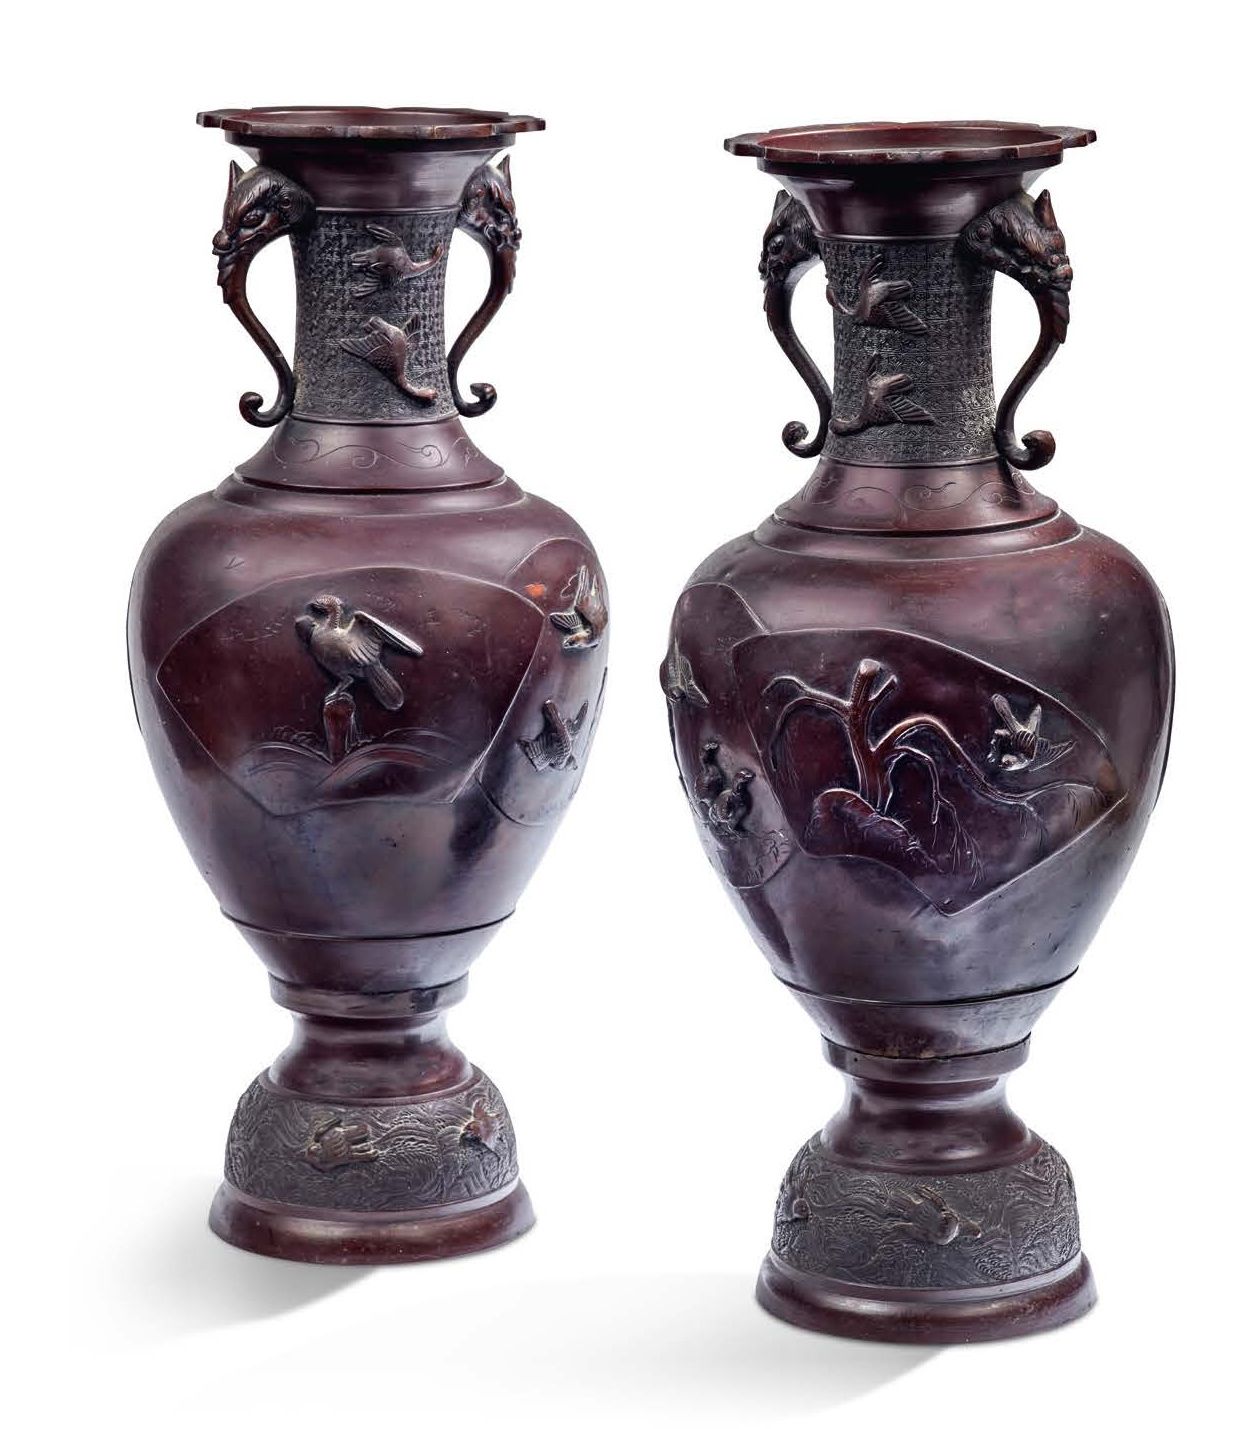 JAPON FIN DE LA PÉRIODE MEIJI, VERS 1880-1900 A pair of bronze amphora vases wit&hellip;